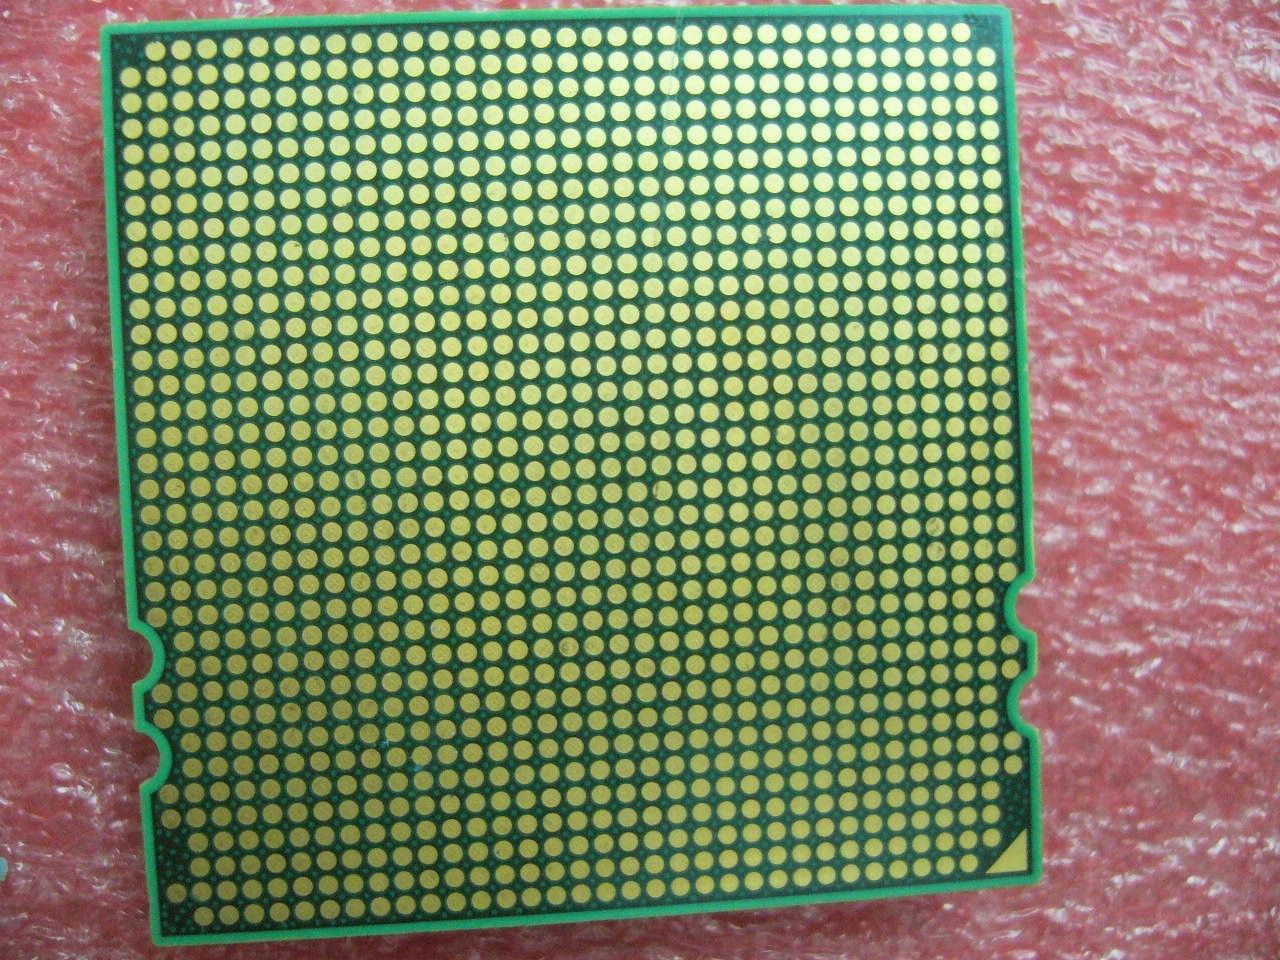 QTY 1x AMD Opteron 8350 2 GHz Quad-Core (OS8350WAL4BGD CPU Socket F 1207 - zum Schließen ins Bild klicken